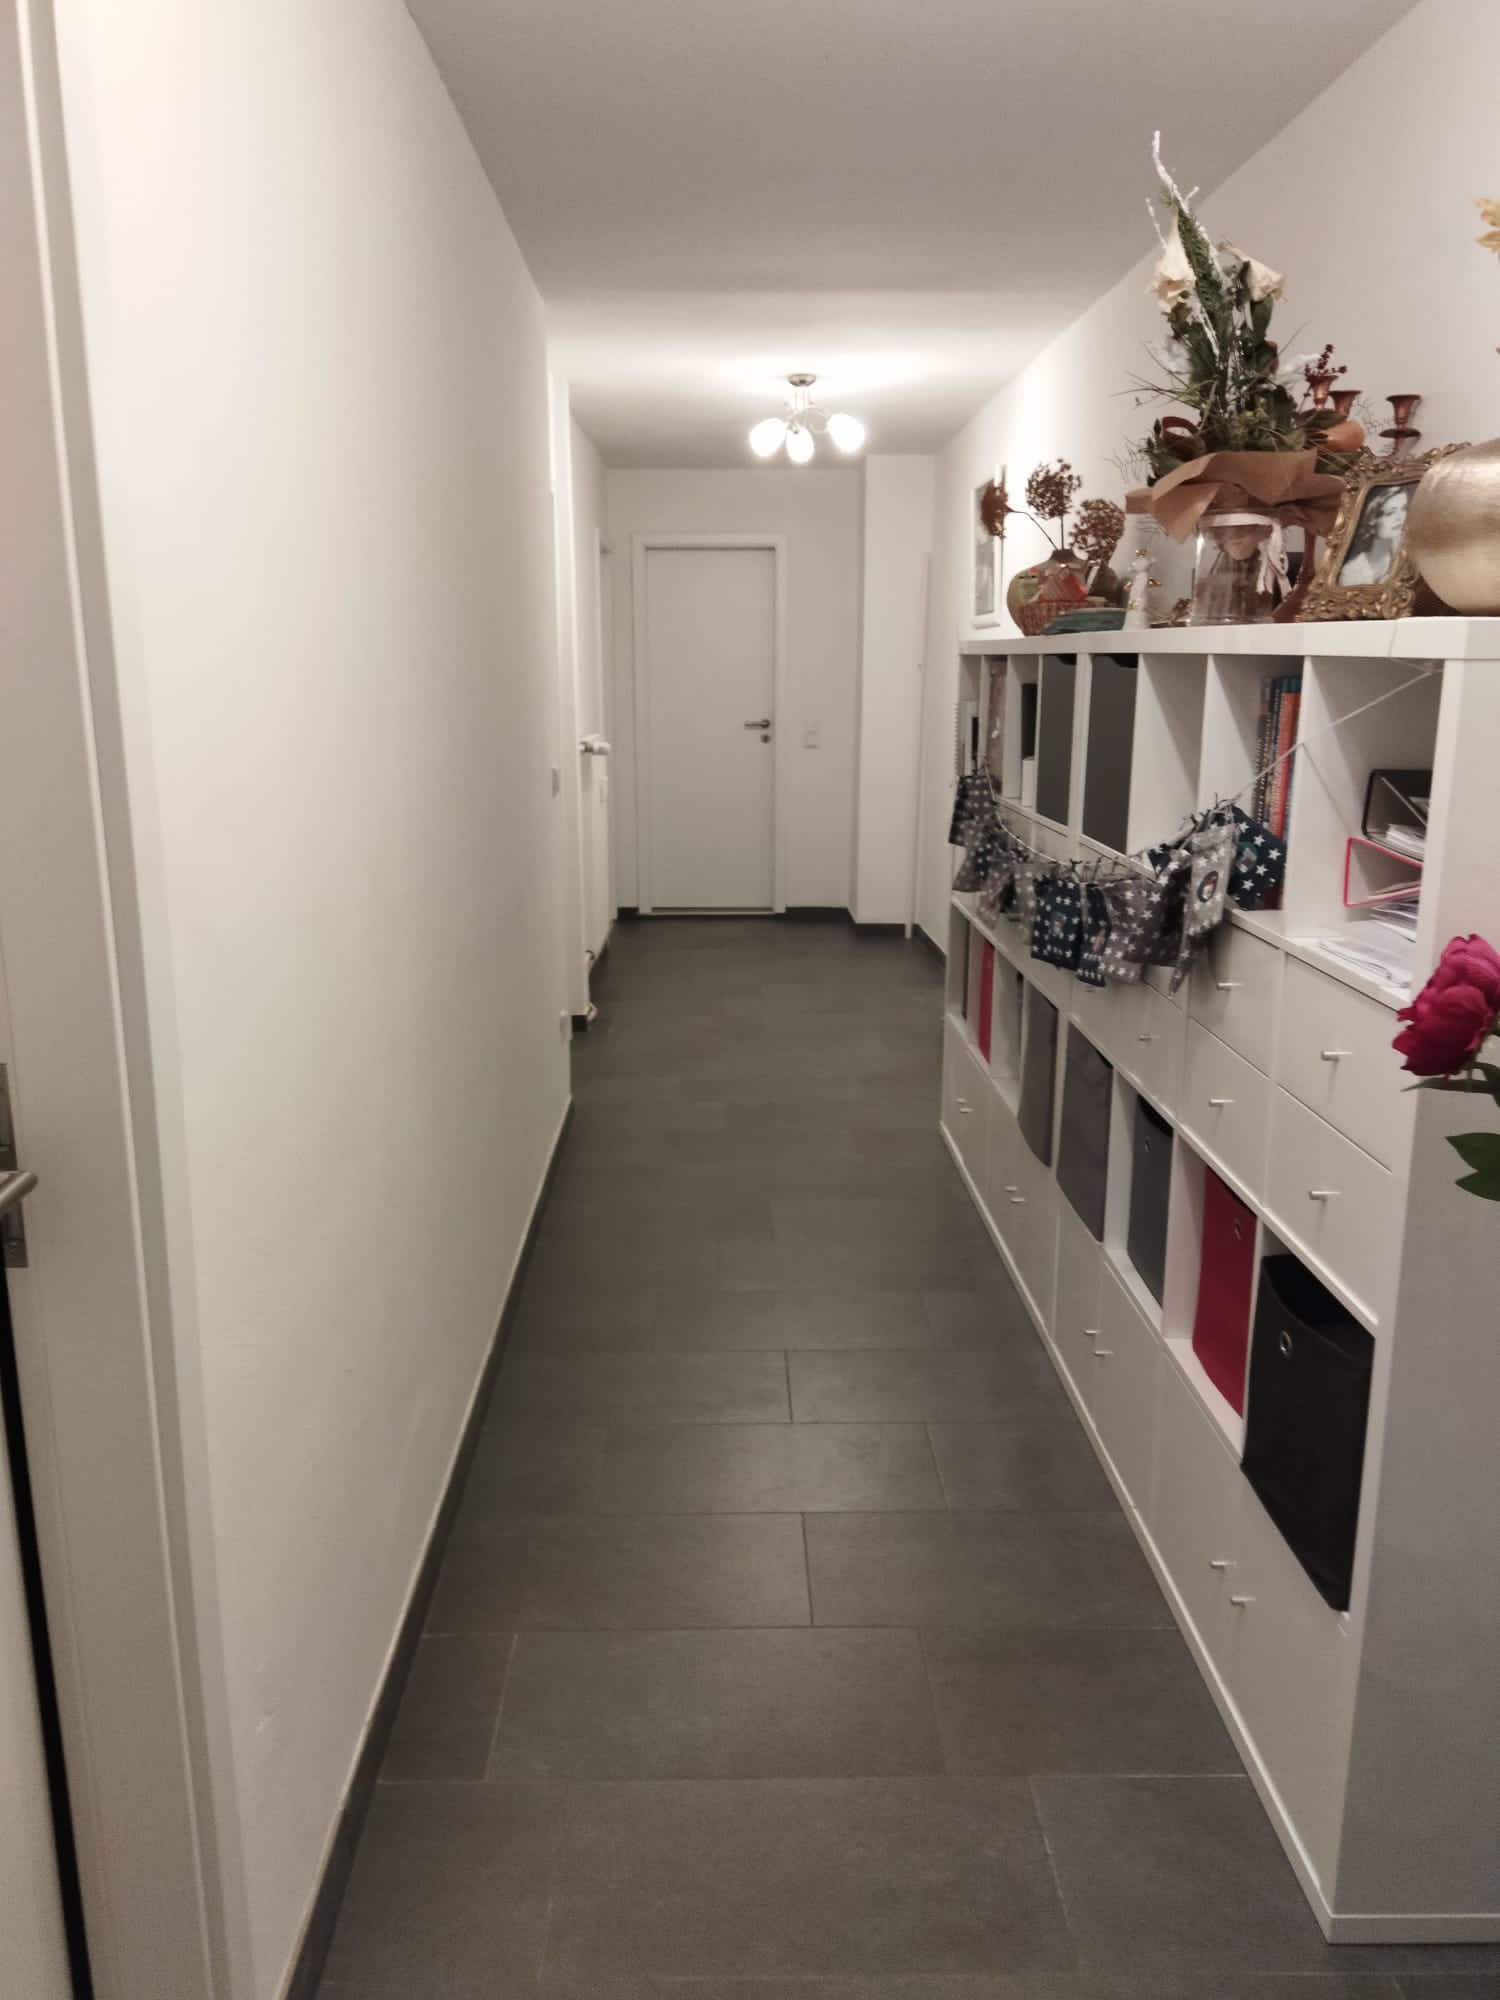 Fotos vom Inserat: Tolle Wohnung in Großauheim